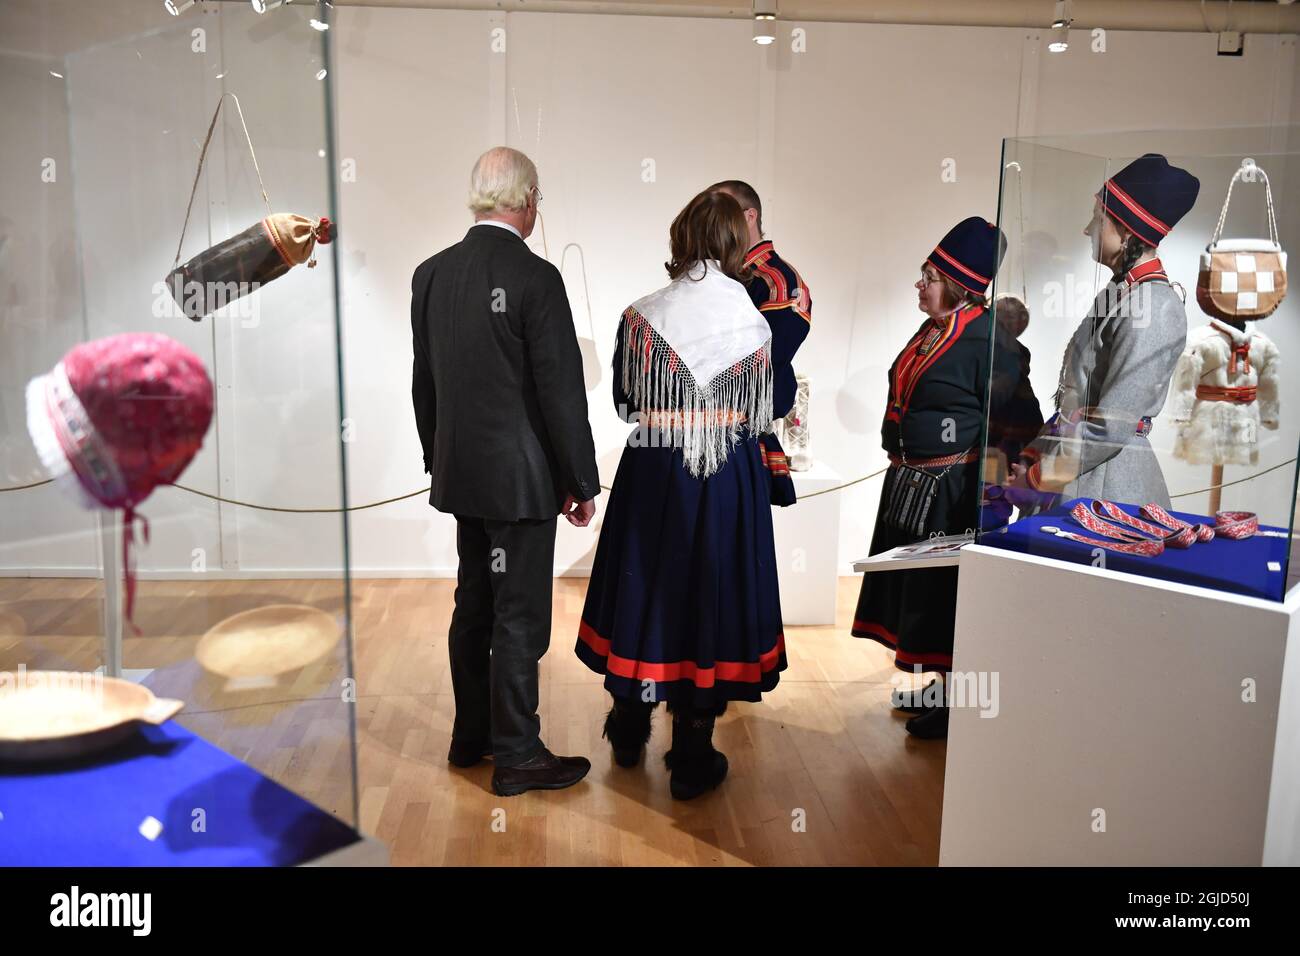 König Carl Gustaf und Königin Silvia besuchen am Donnerstag, den 6. Februar 2020, am Sami-Nationalfeiertag, eine Schülerausstellung, in der Kunsthandwerk gezeigt wird, in Jokkmokk, Nordschweden. Foto: Naina Helen Jama / TT kod 11880 Stockfoto